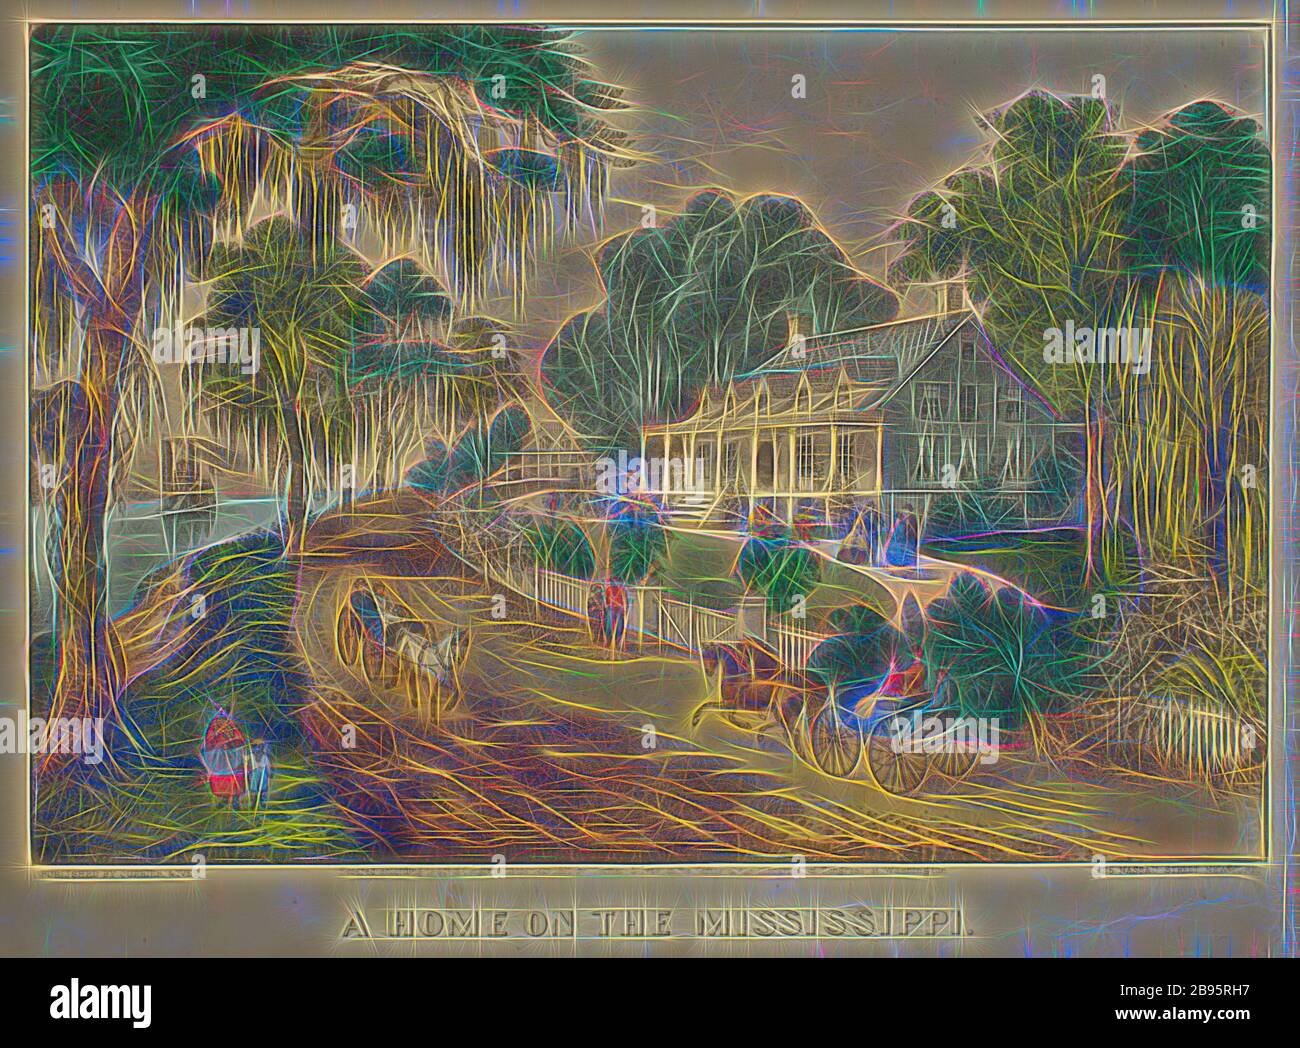 A Home on the Mississippi, Nathaniel Currier (American, 1813-1888), James Merritt Ives (American, 1824-1895), 1871, litografia colorata a mano, 8-1/2 x 12-1/2 in. (immagine) 10-1/4 x 14-1/8 in. (Foglio), Reimagined by Gibon, disegno di calore allegro di luminosità e raggi di luce radianza. Arte classica reinventata con un tocco moderno. La fotografia ispirata al futurismo, che abbraccia l'energia dinamica della tecnologia moderna, del movimento, della velocità e rivoluziona la cultura. Foto Stock